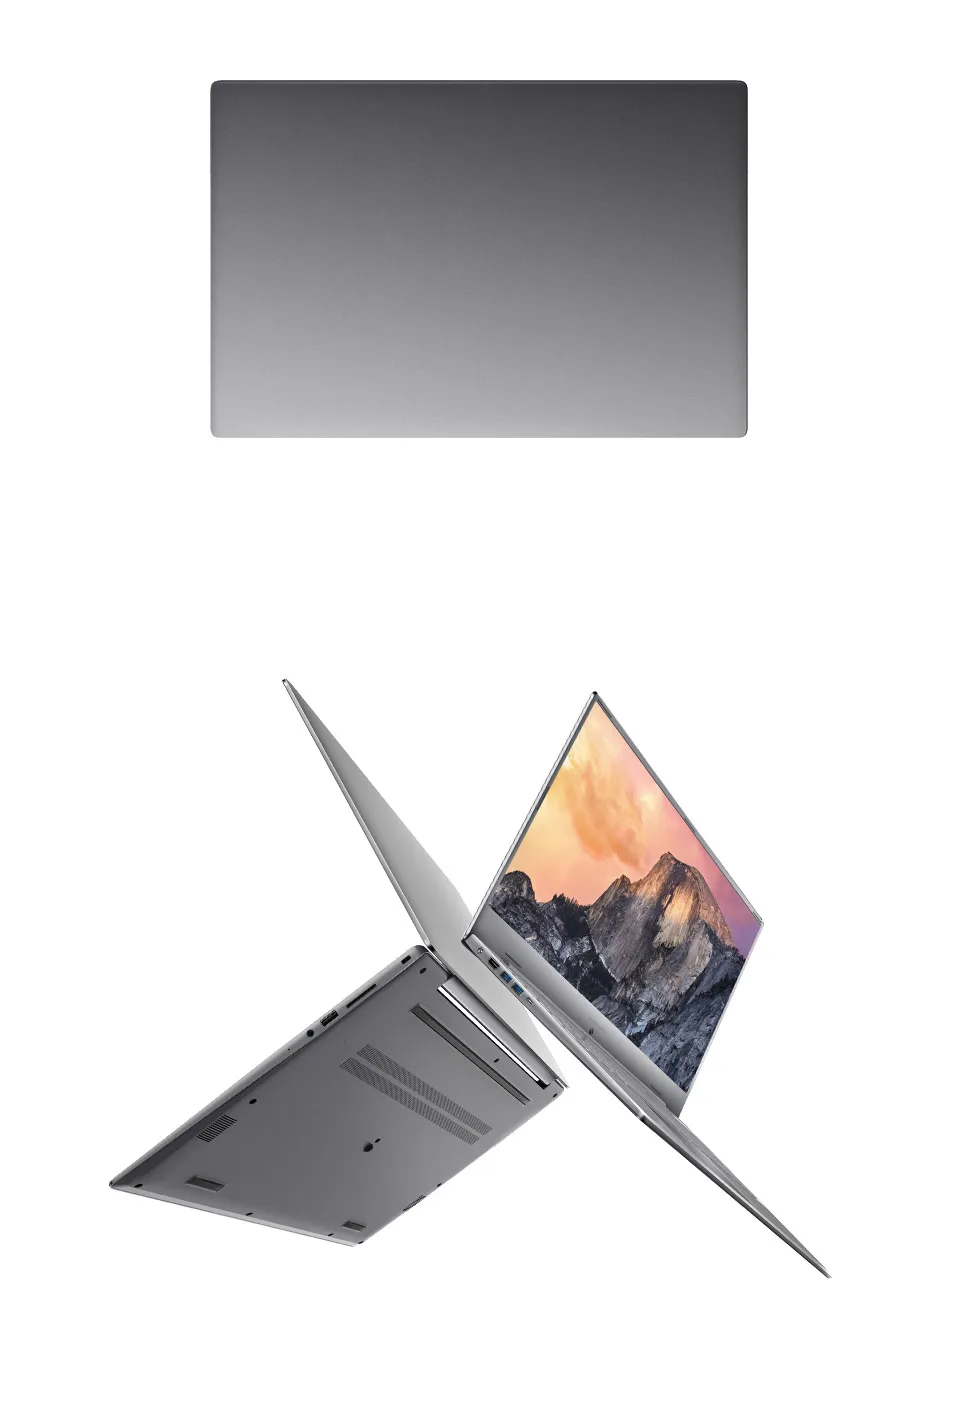 Ноутбук MAIBENBEN Xiaomai 6S Plus с большим экраном 17," FHD Intel i5-8265U/i5-8265U/MX250/8ГБ/512ГБ SSD/DOS для работы и игр